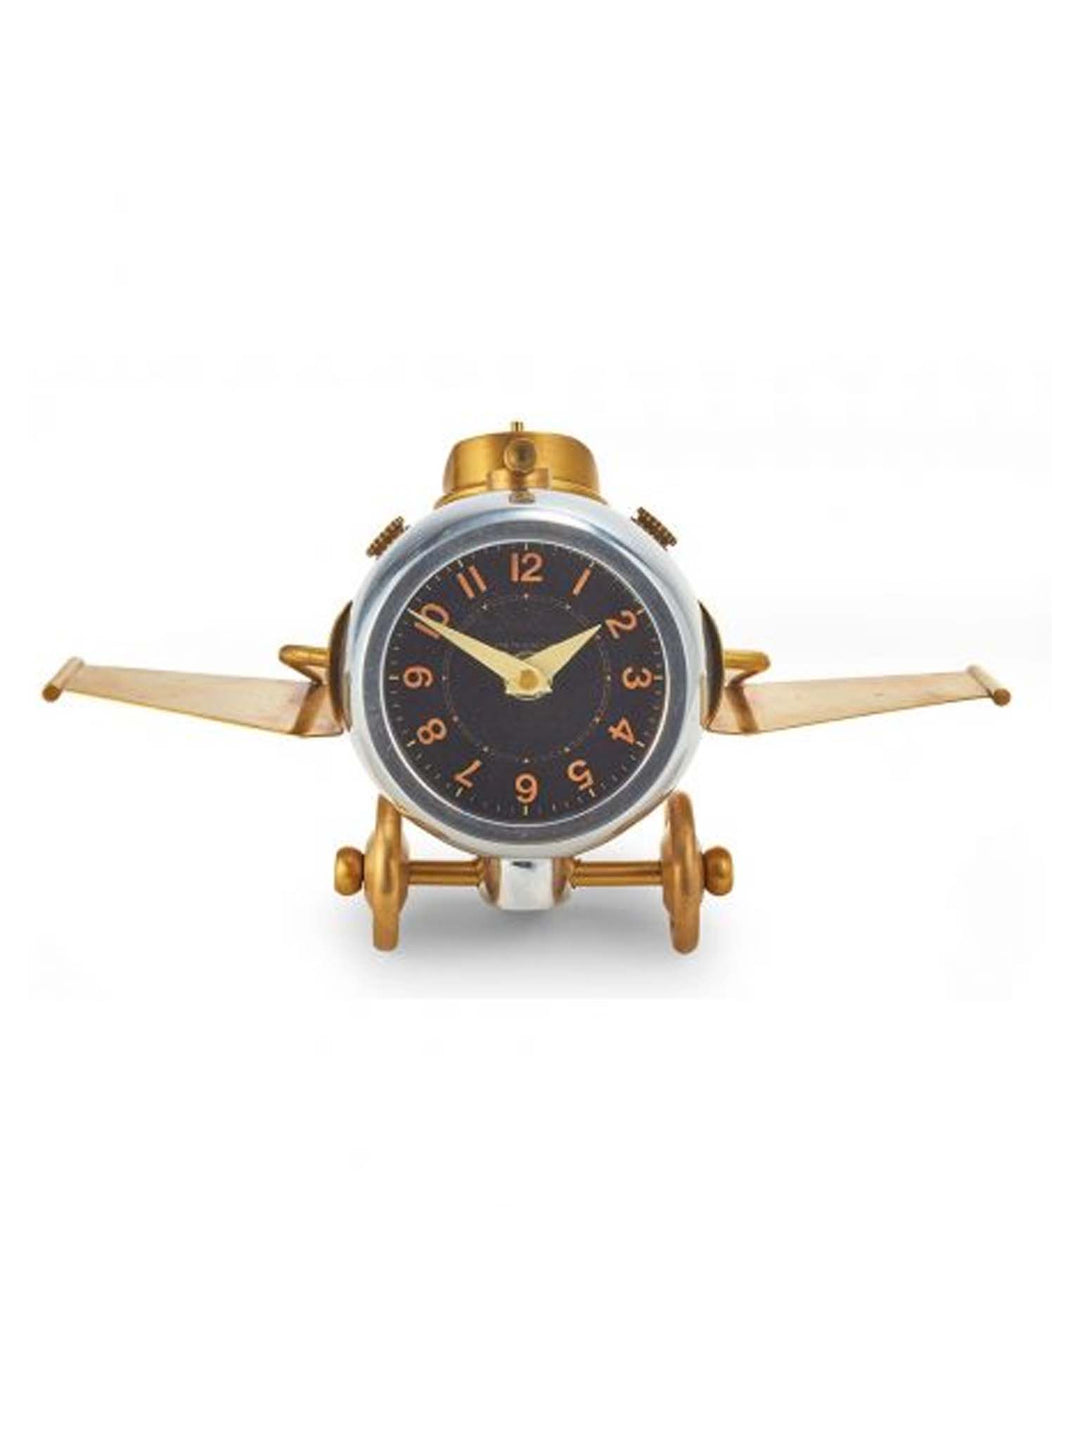 Thunderbolt clock, silver clock, desk object, table clock, alarm clock, Thunderbolt Table Clock